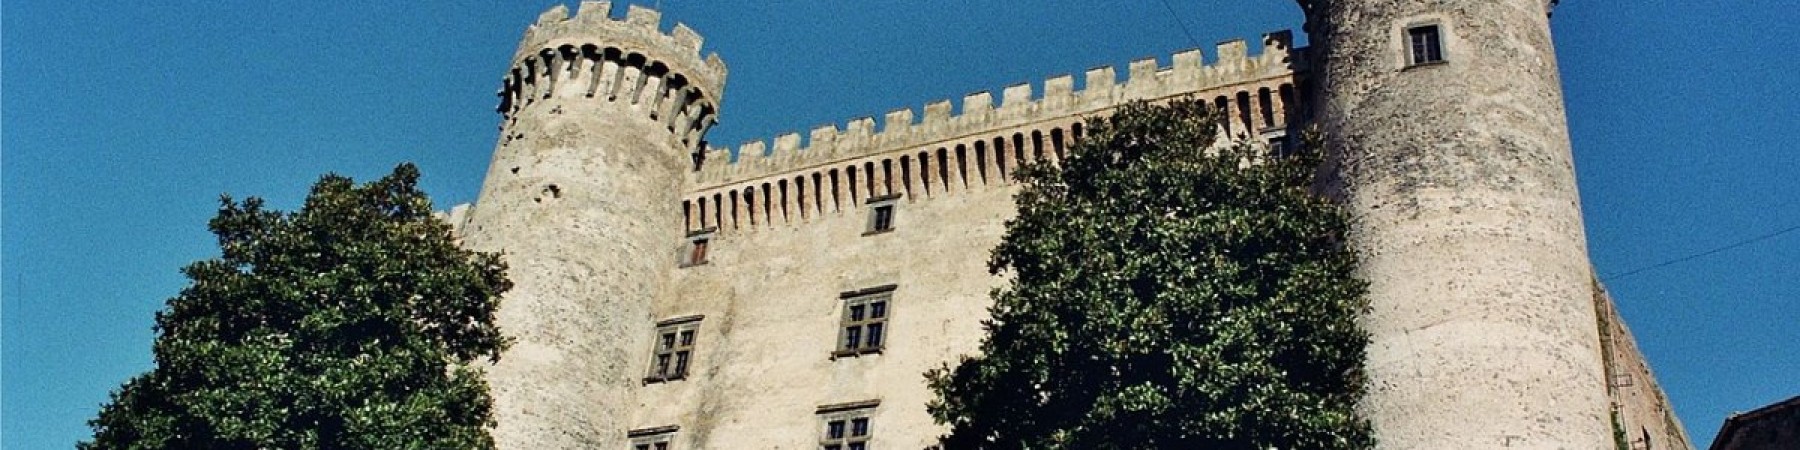 Schools Guided Tour - Odescalchi Castle and Lake Bracciano